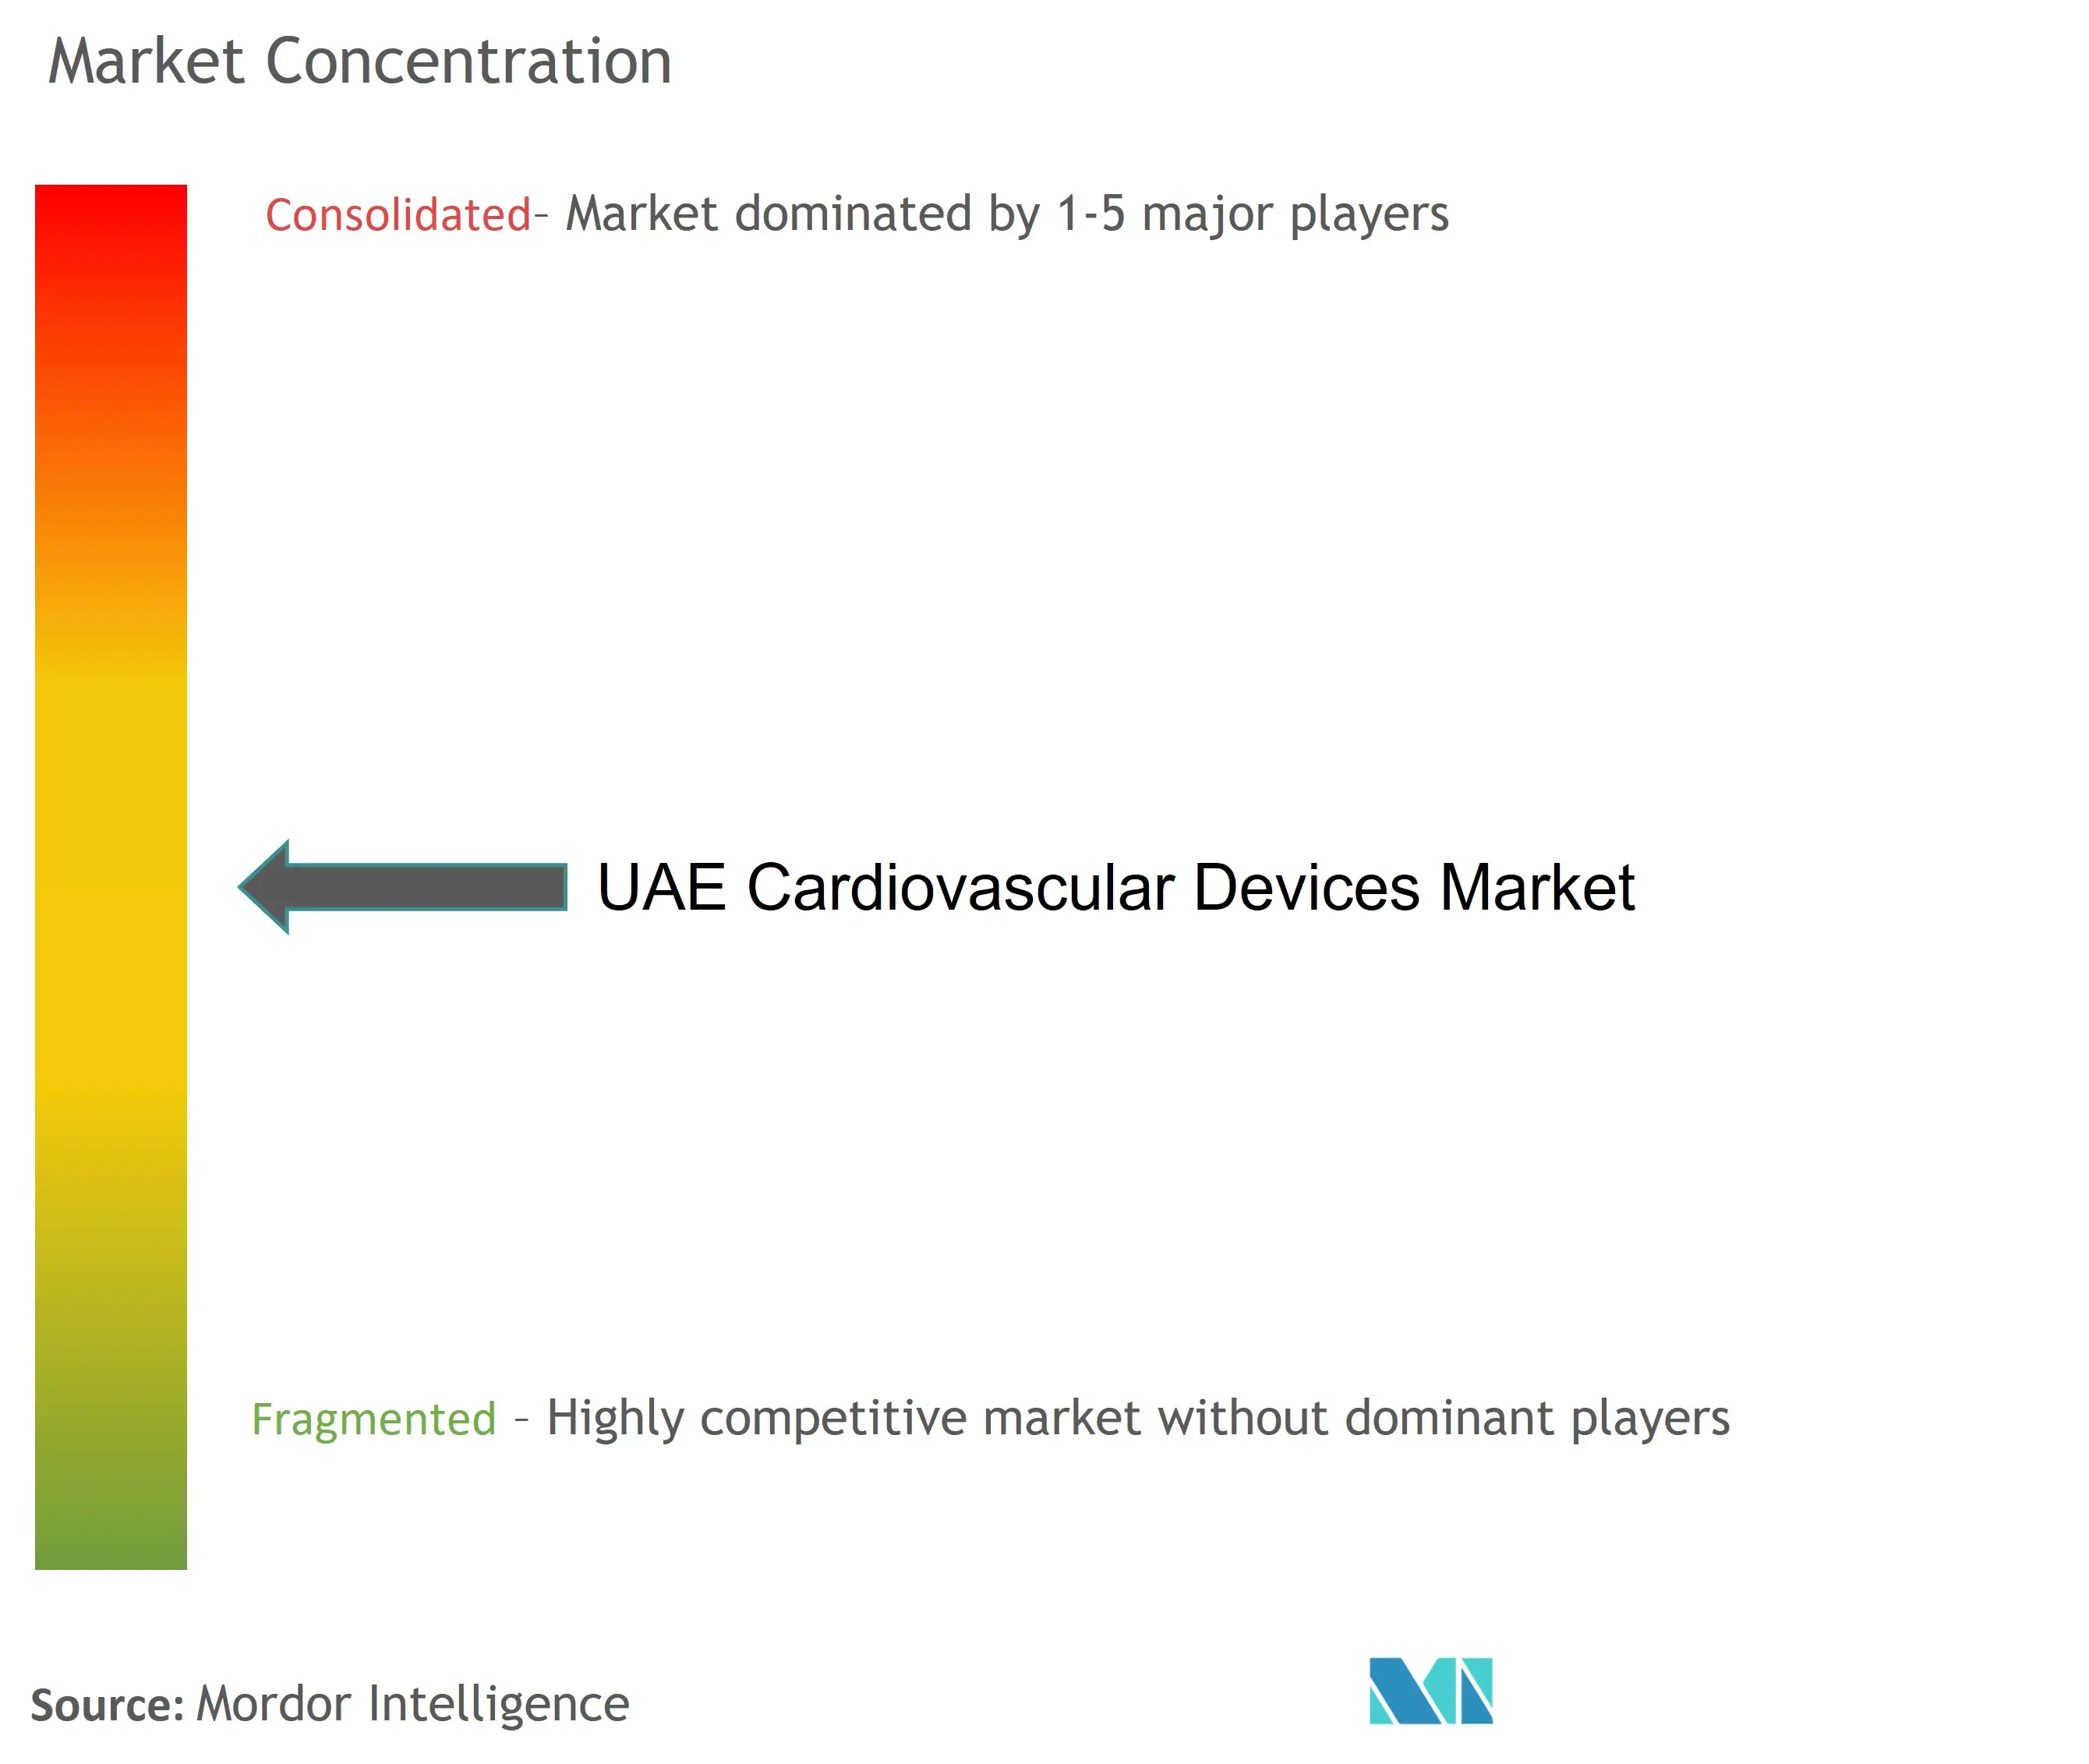 Dispositivos cardiovasculares de los EAUConcentración del Mercado